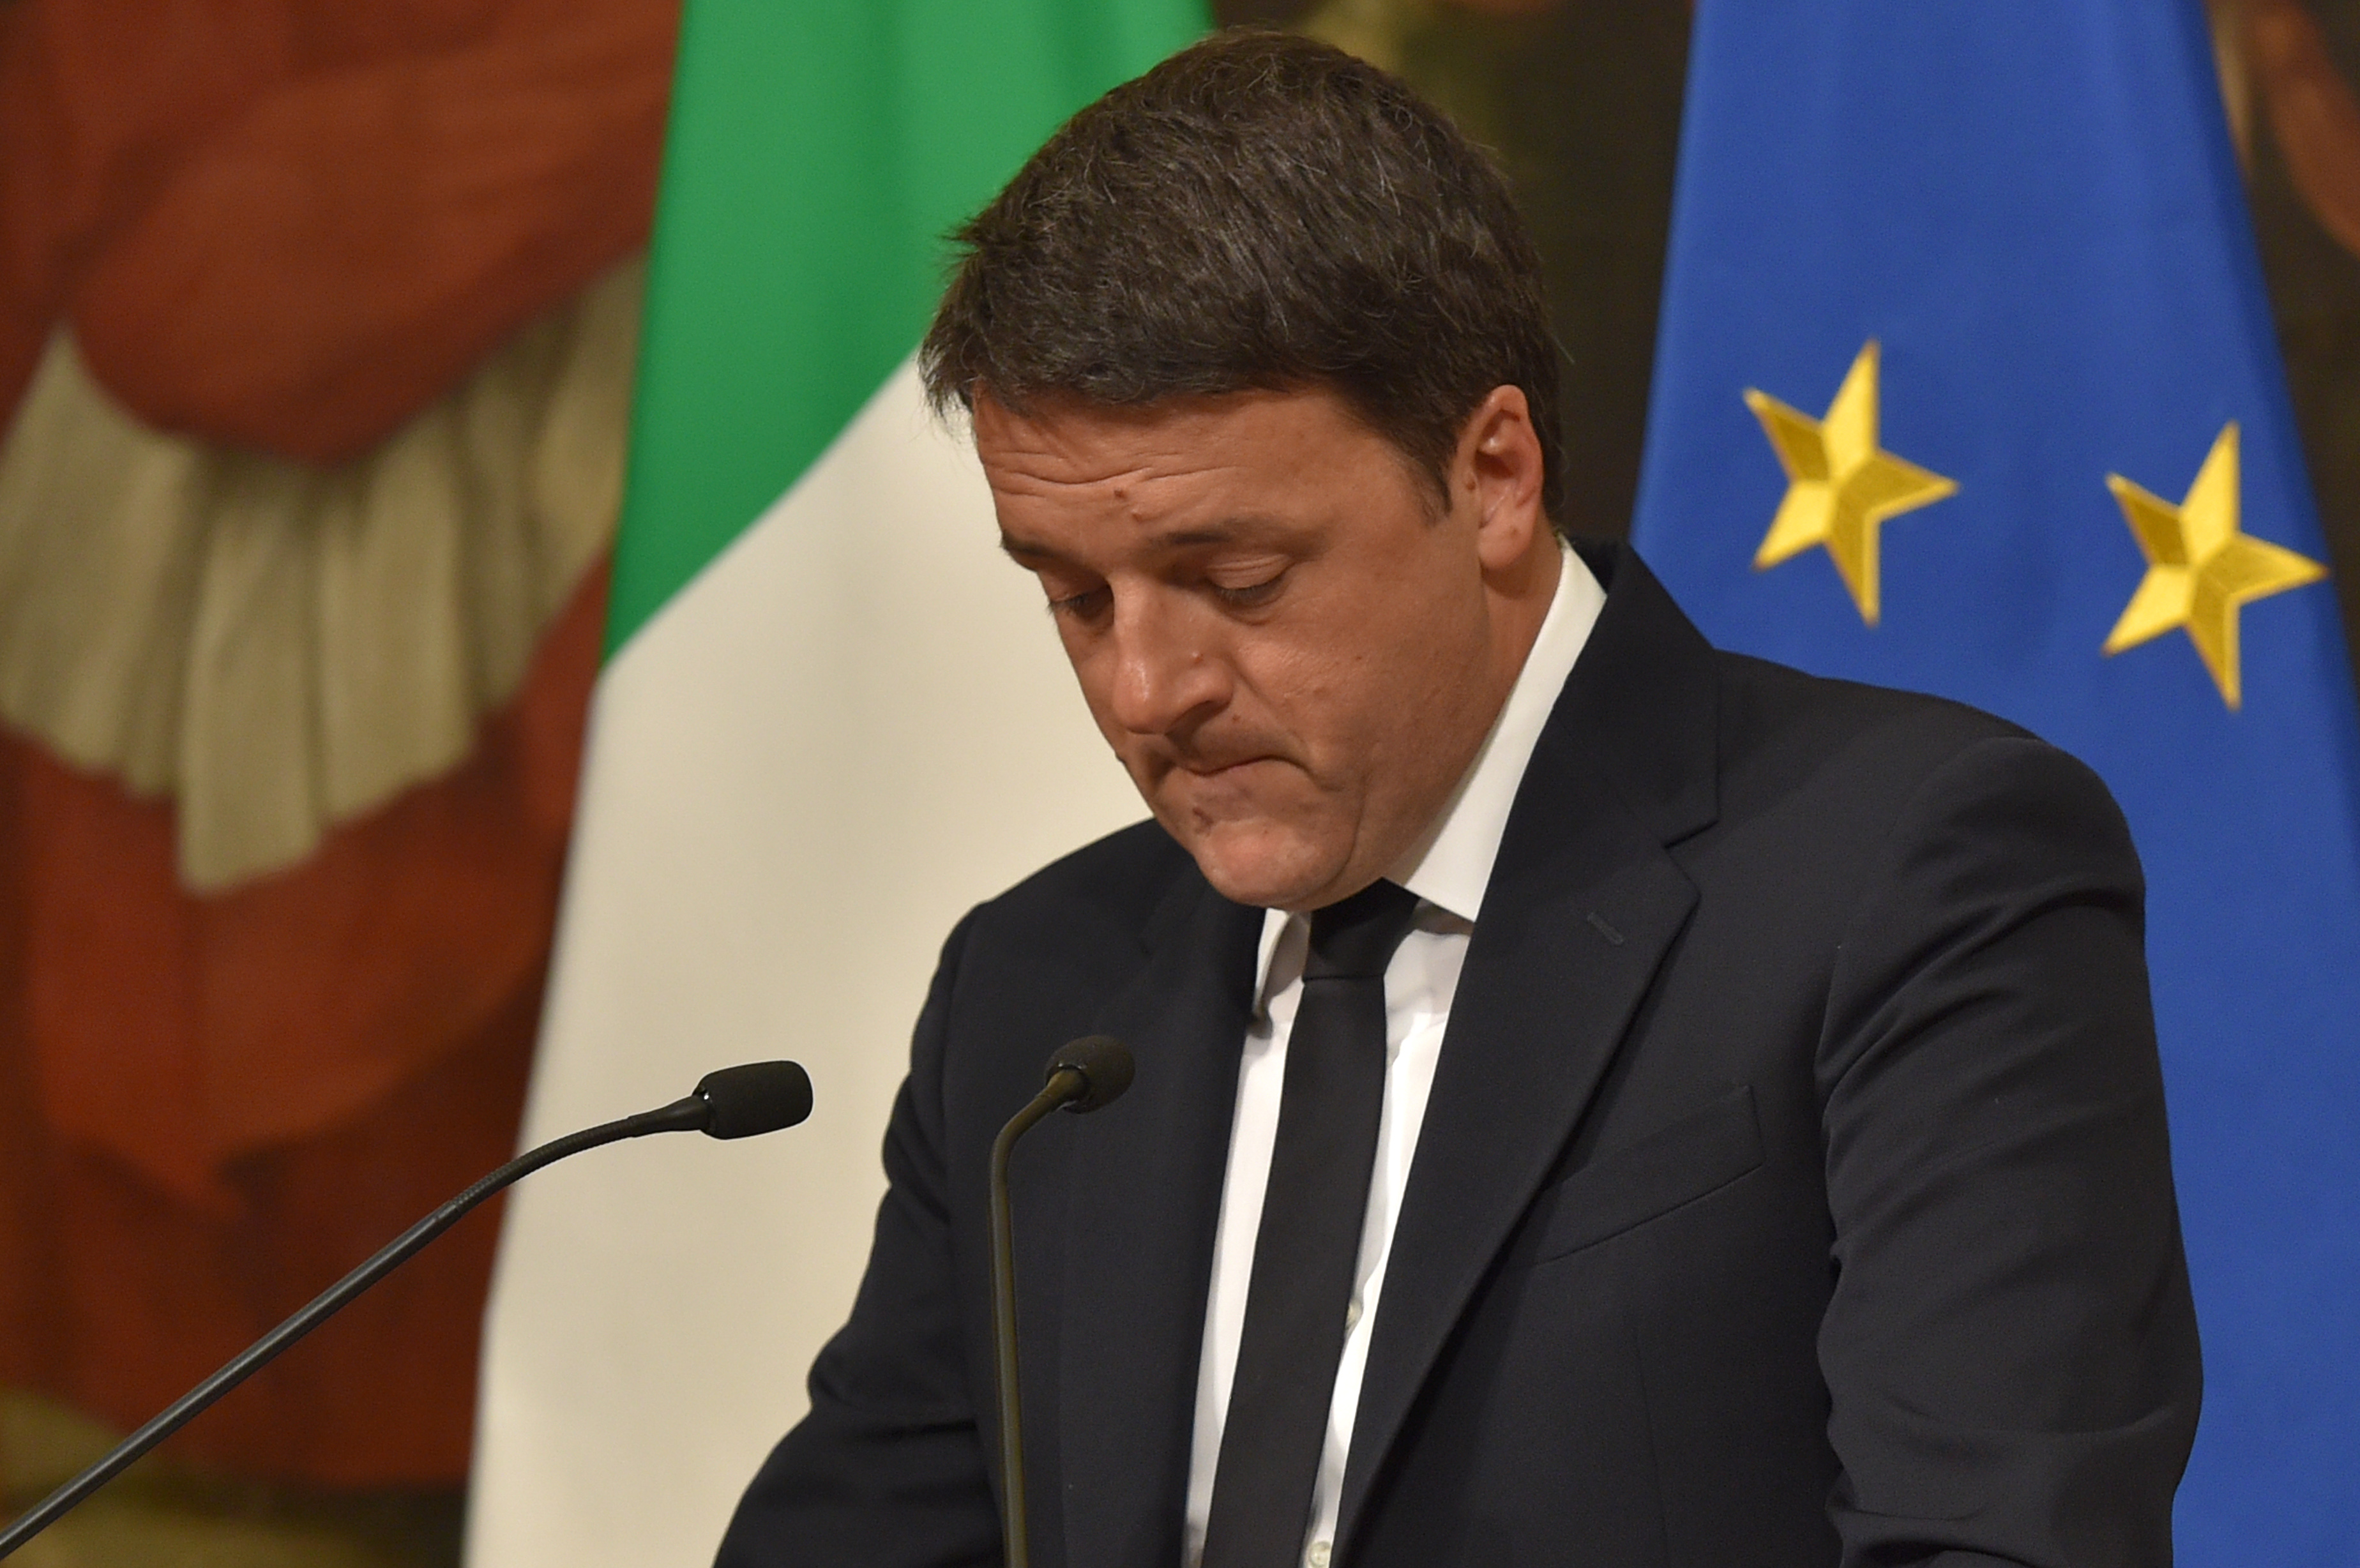 Referendum, il No stravince con oltre il 59% dei voti  Renzi: “Domani al Quirinale per le dimissioni” / Live